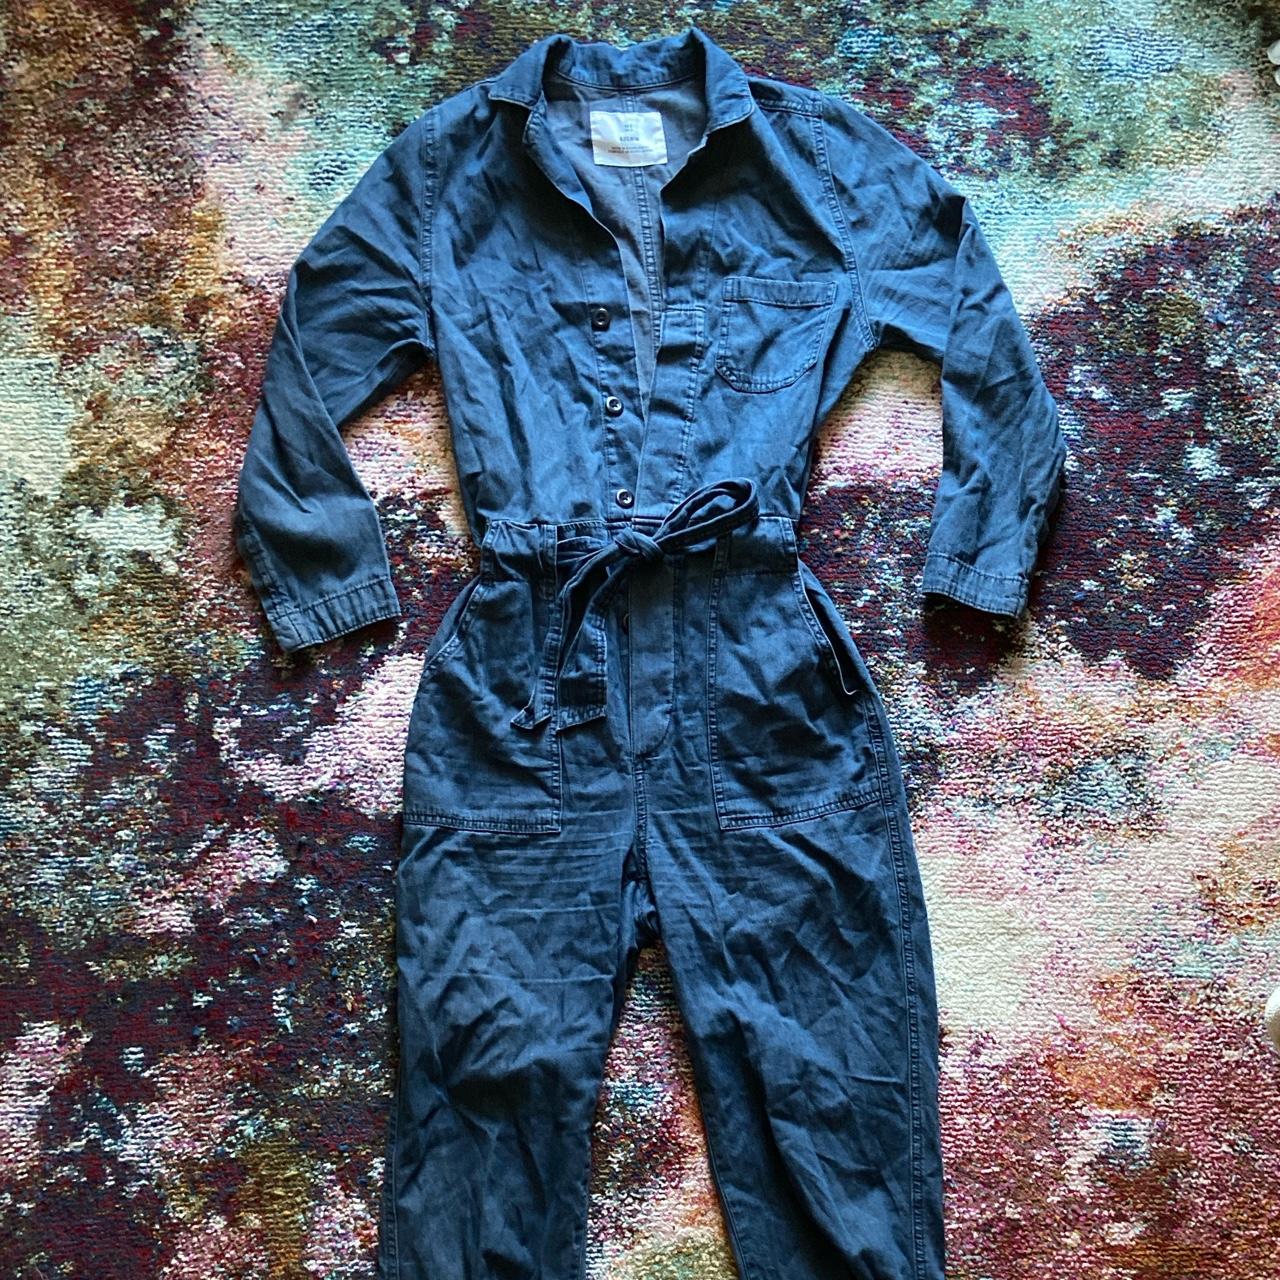 H&M Denim Jumpsuit - Blue  Denim jumpsuit, Denim boiler suit, Boiler suit